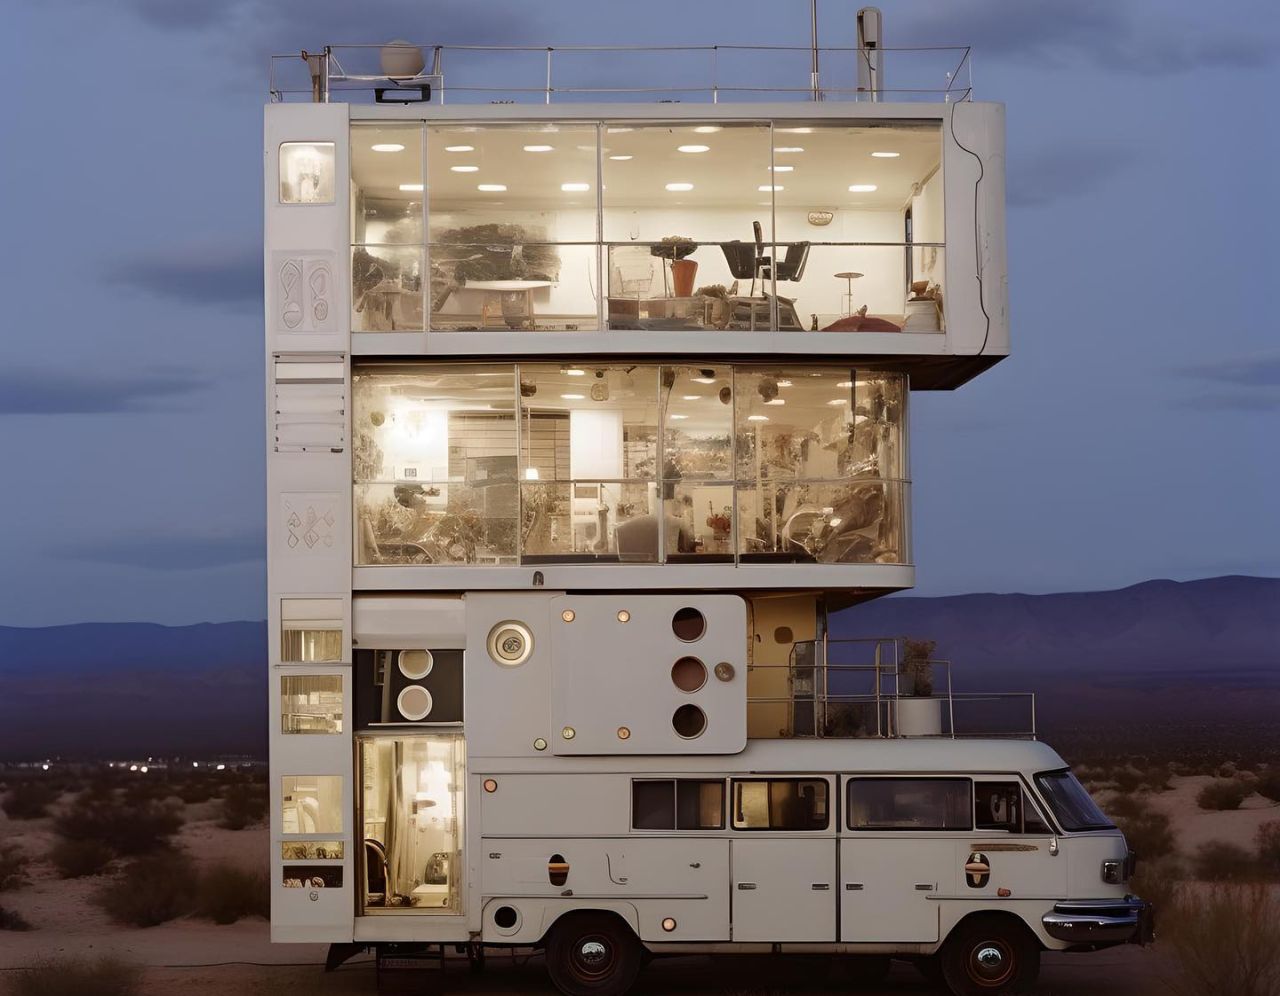 Multi-decker caravans set in retro-futuristic world are epitome of luxury on wheels